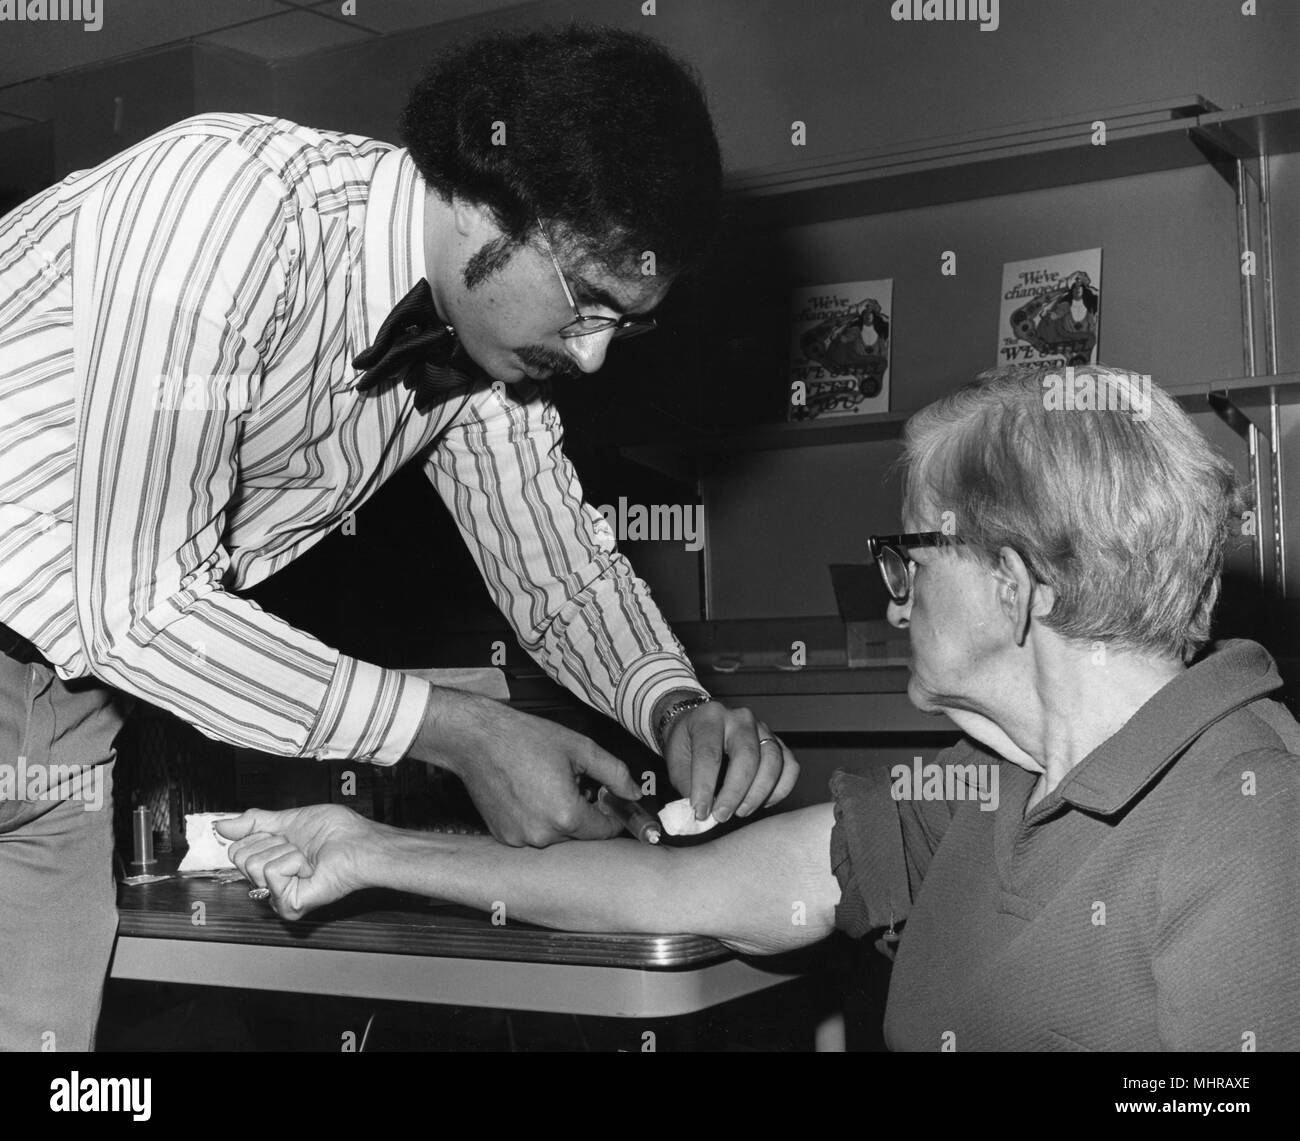 L'agent de santé publique en prenant un échantillon de sang d'une femme plus âgée, 1976. Image courtoisie Centres for Disease Control (CDC). () Banque D'Images